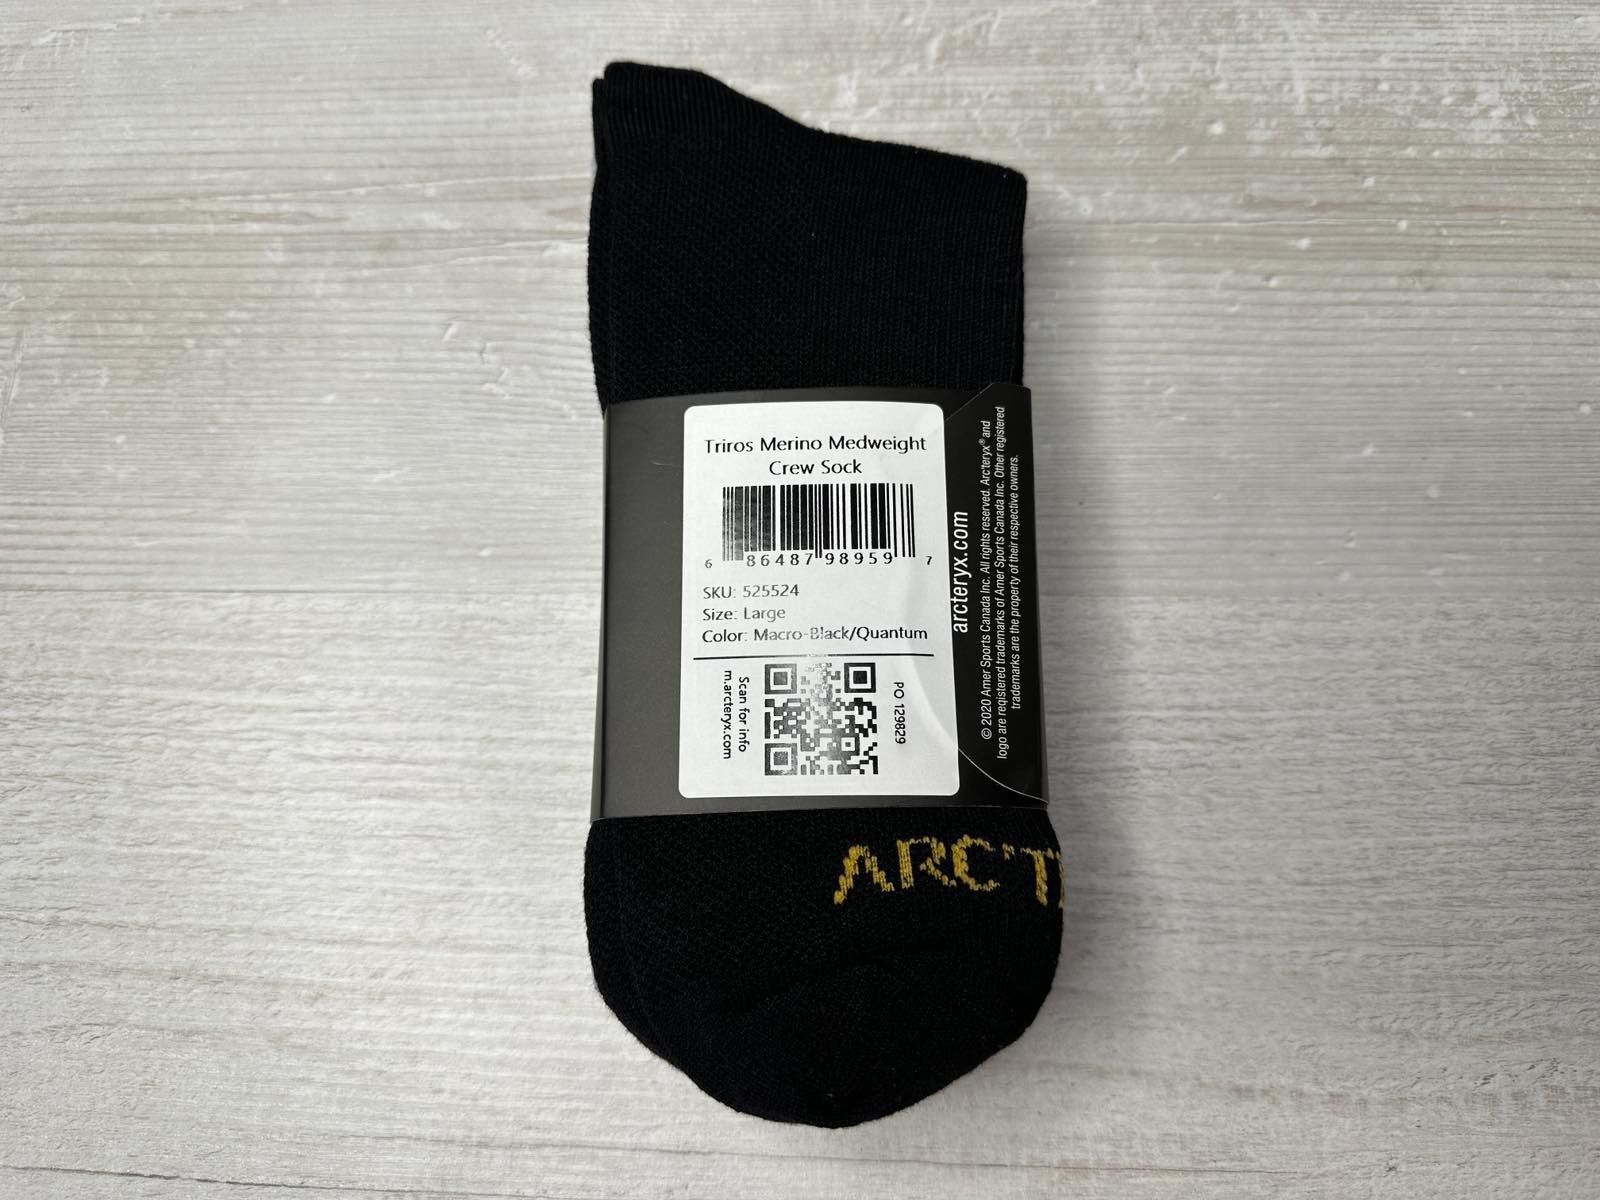 Чоловічі шкарпетки Arc'teryx Triros Merino Medweight Crew Sock